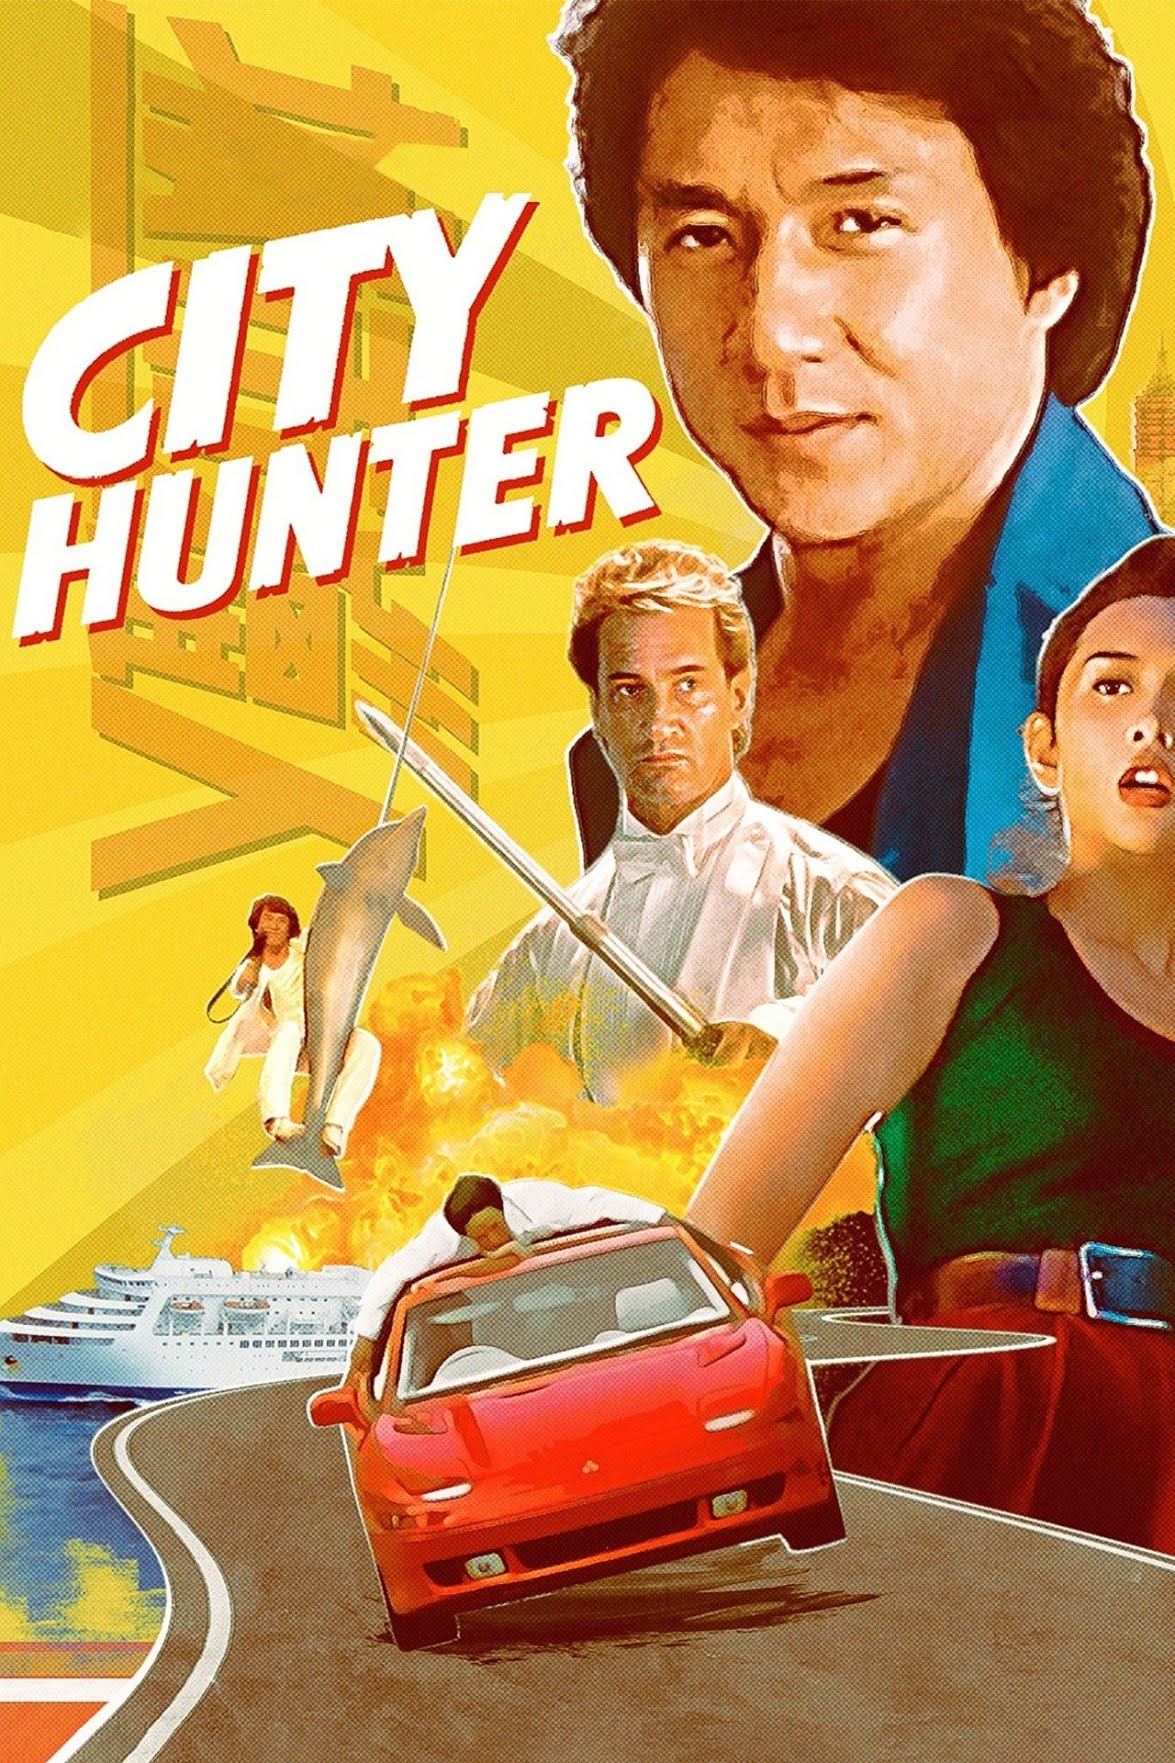 City Hunter - Wikipedia